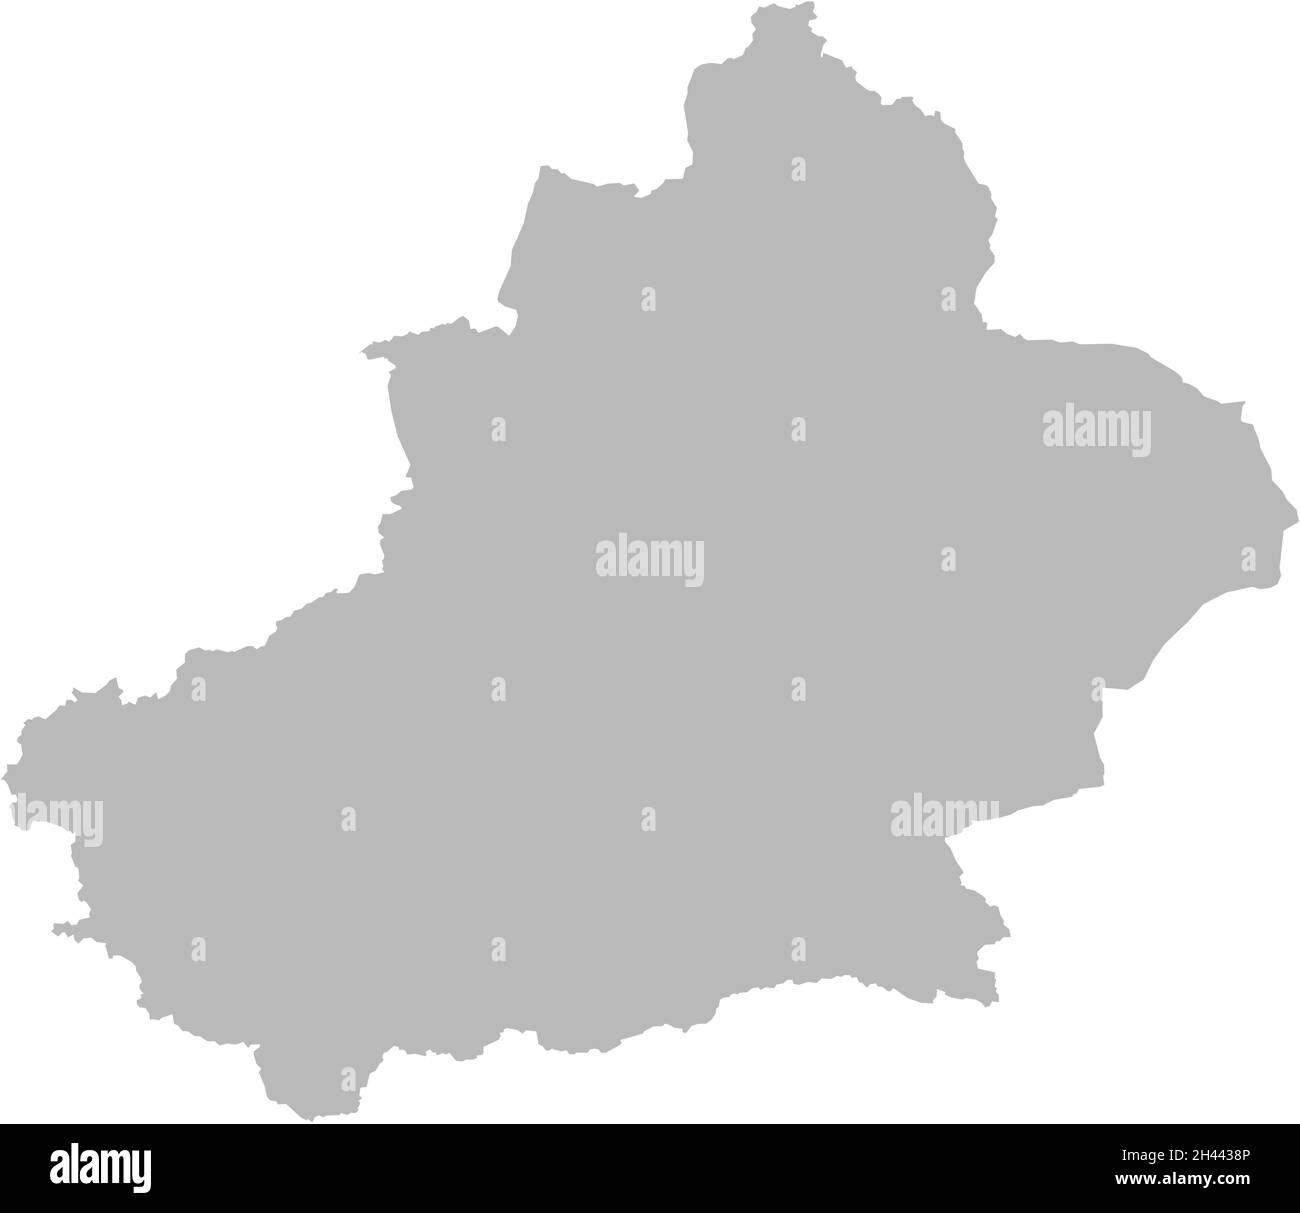 Karte der Autonomen Region China xinjiang Uiguren. Grauer Hintergrund. Geschäftskonzepte und -Hintergründe. Stock Vektor